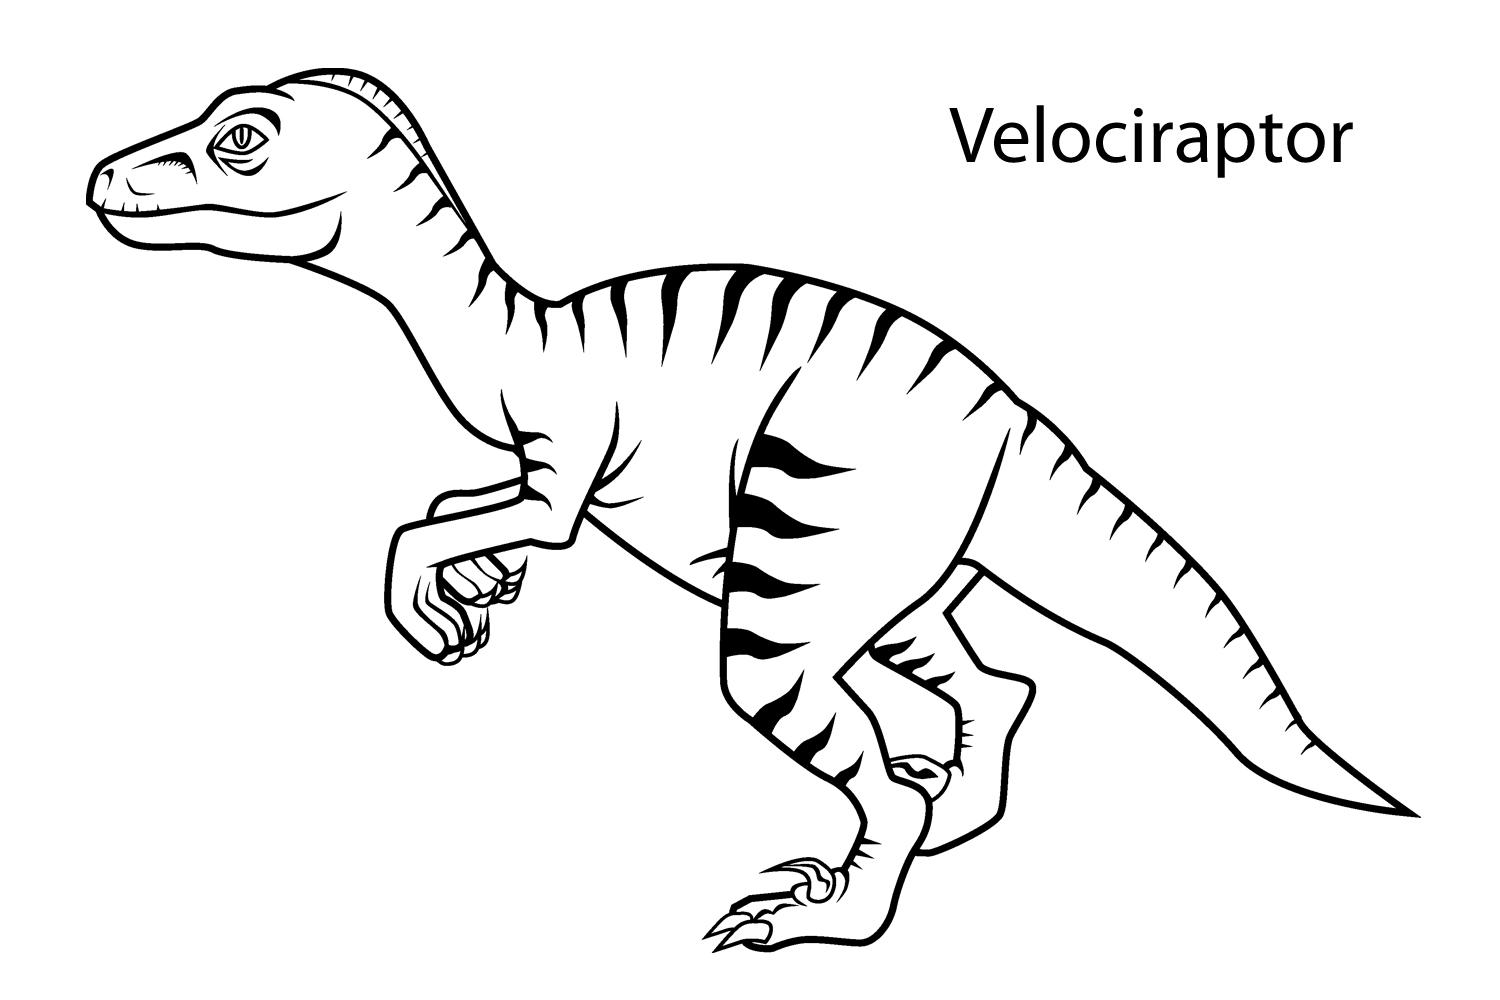 Раскраски с динозавром раптор  Велоцираптор